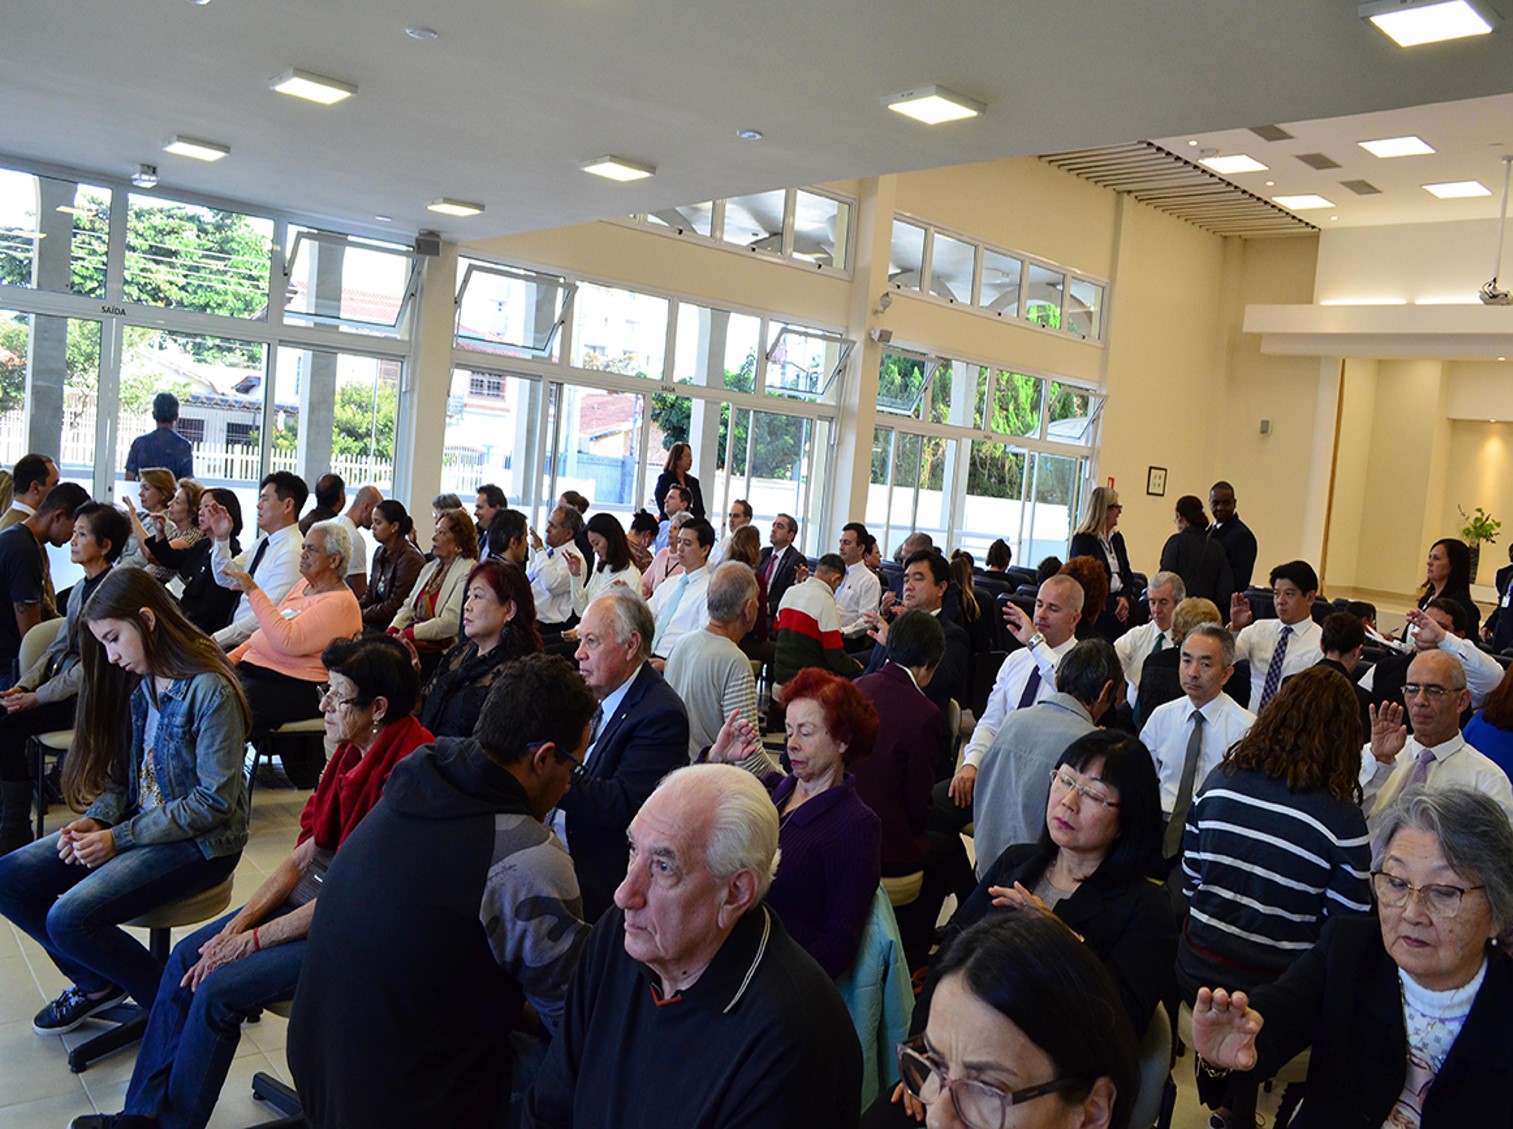 Visita do presidente da IMMB reúne centenas de pessoas na Igreja São José dos Campos (SP)